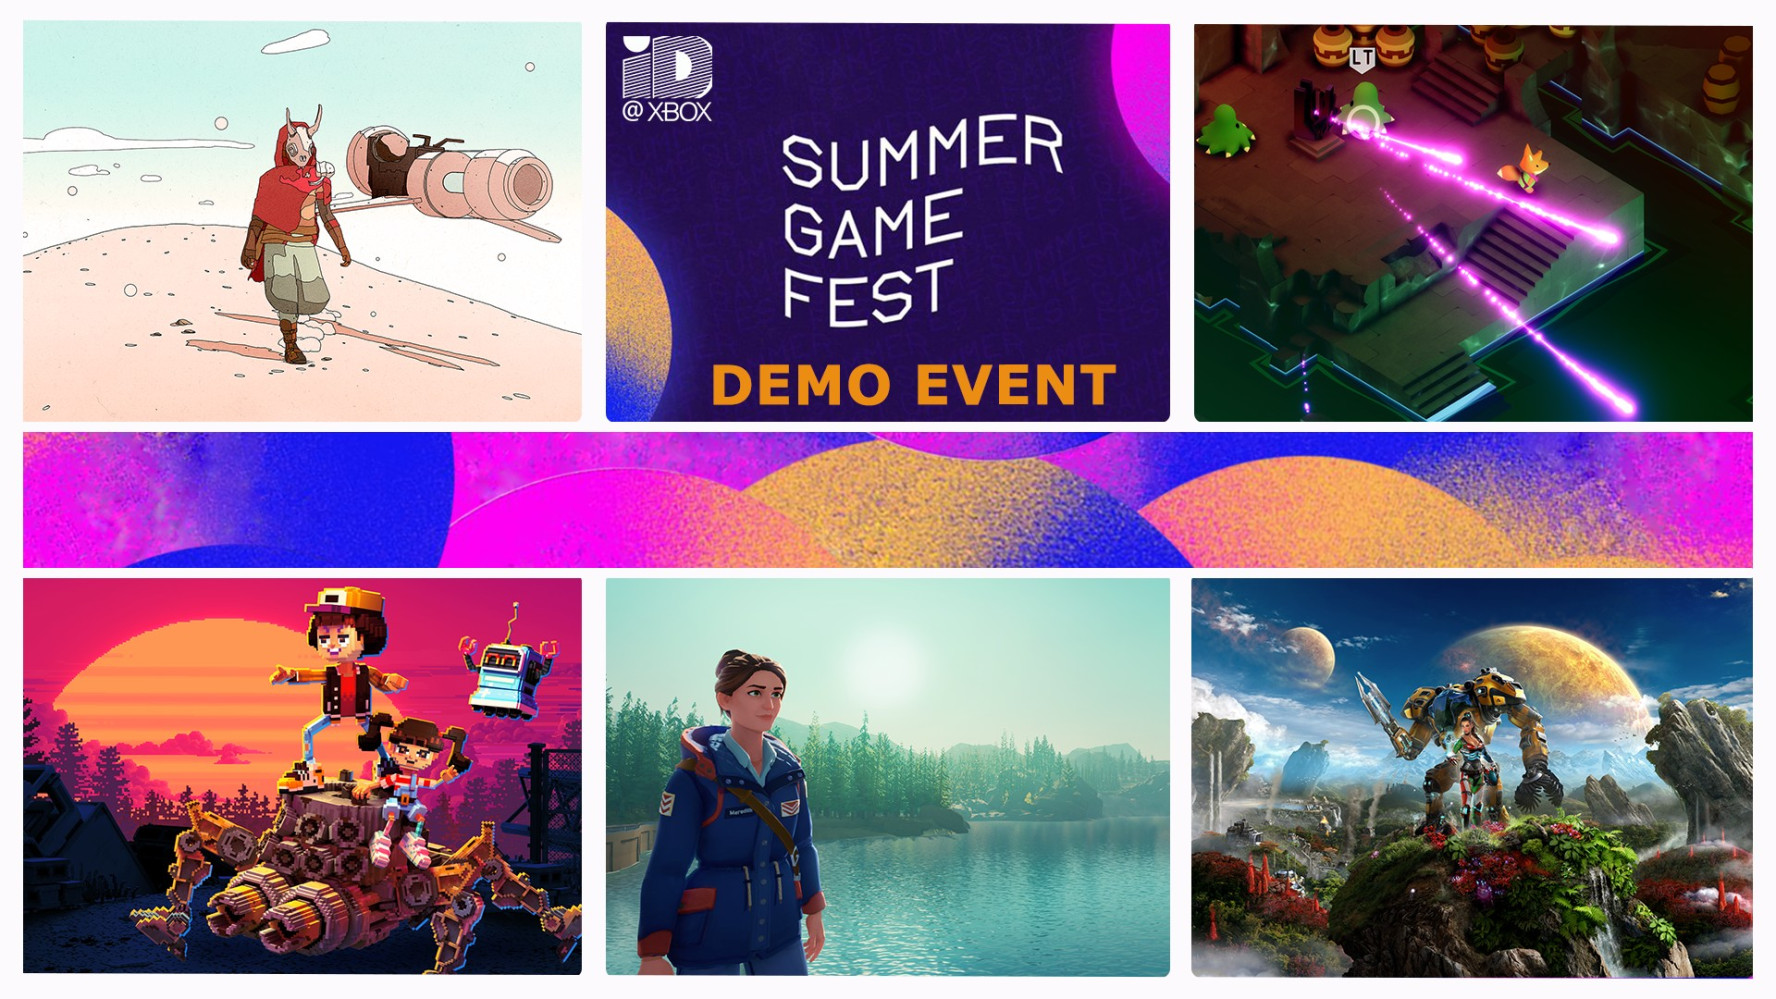 Giocate a 40 nuovi giochi con l'evento Xbox Summer Game Fest Demo